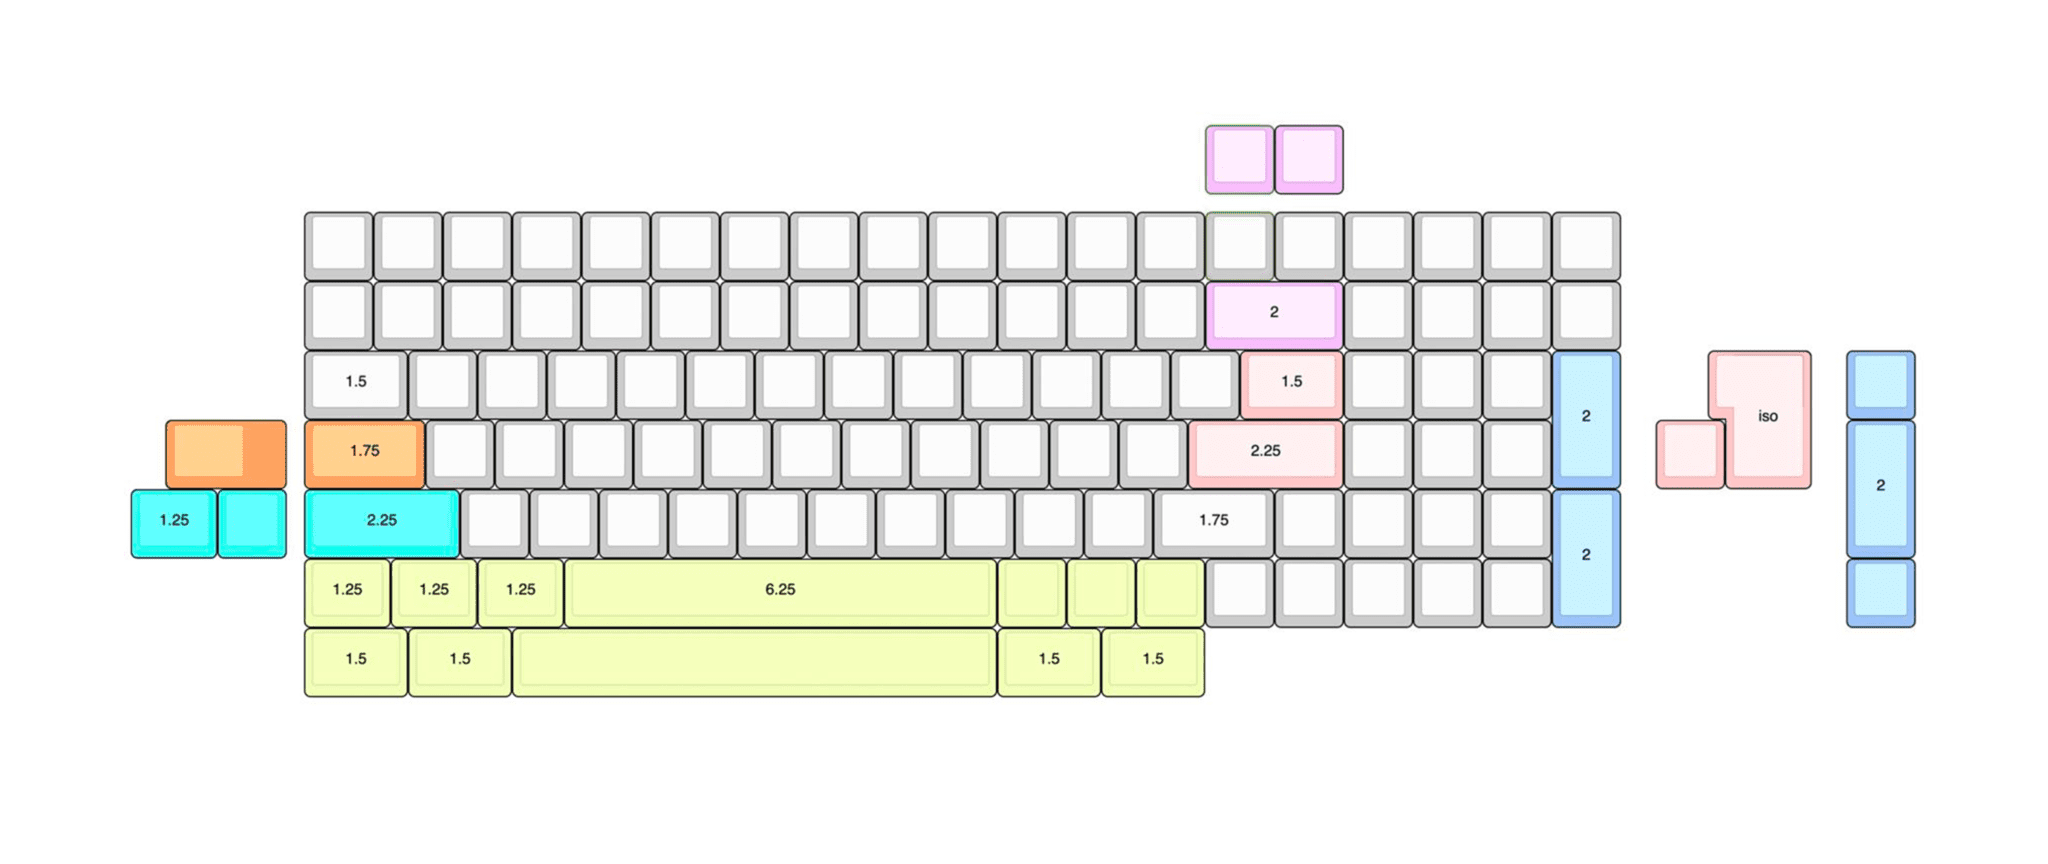 KBDfans Tofu96 Mechanical Keyboard DIY KIT